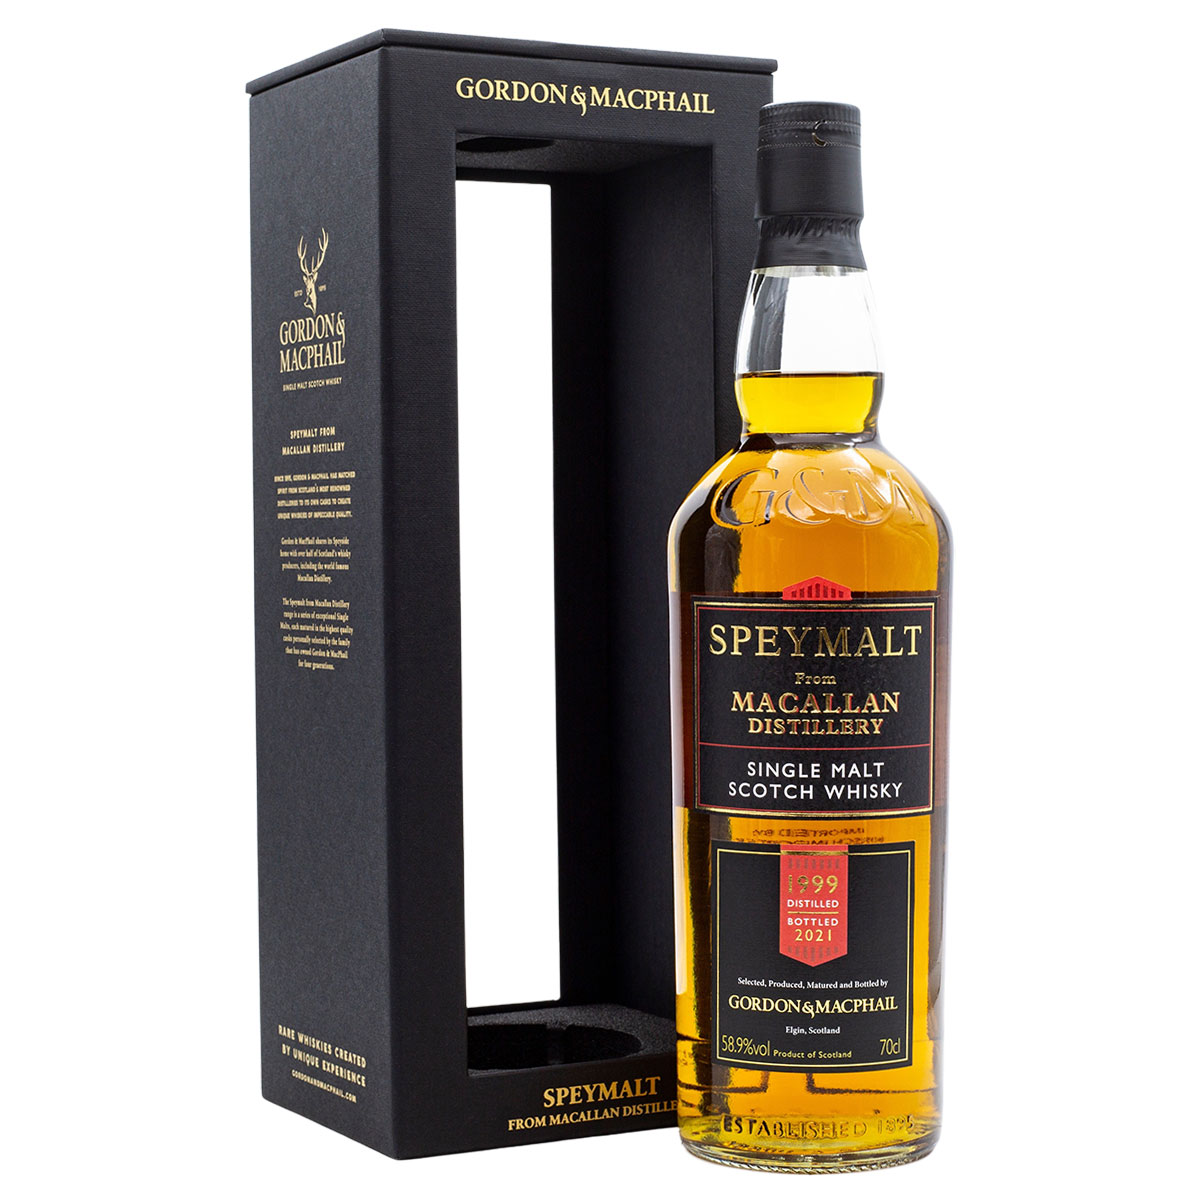 Gordon & MacPhail Speymalt Macallan 1999/2021 Cask 10132: 22 Jahre alte Whisky-Rarität